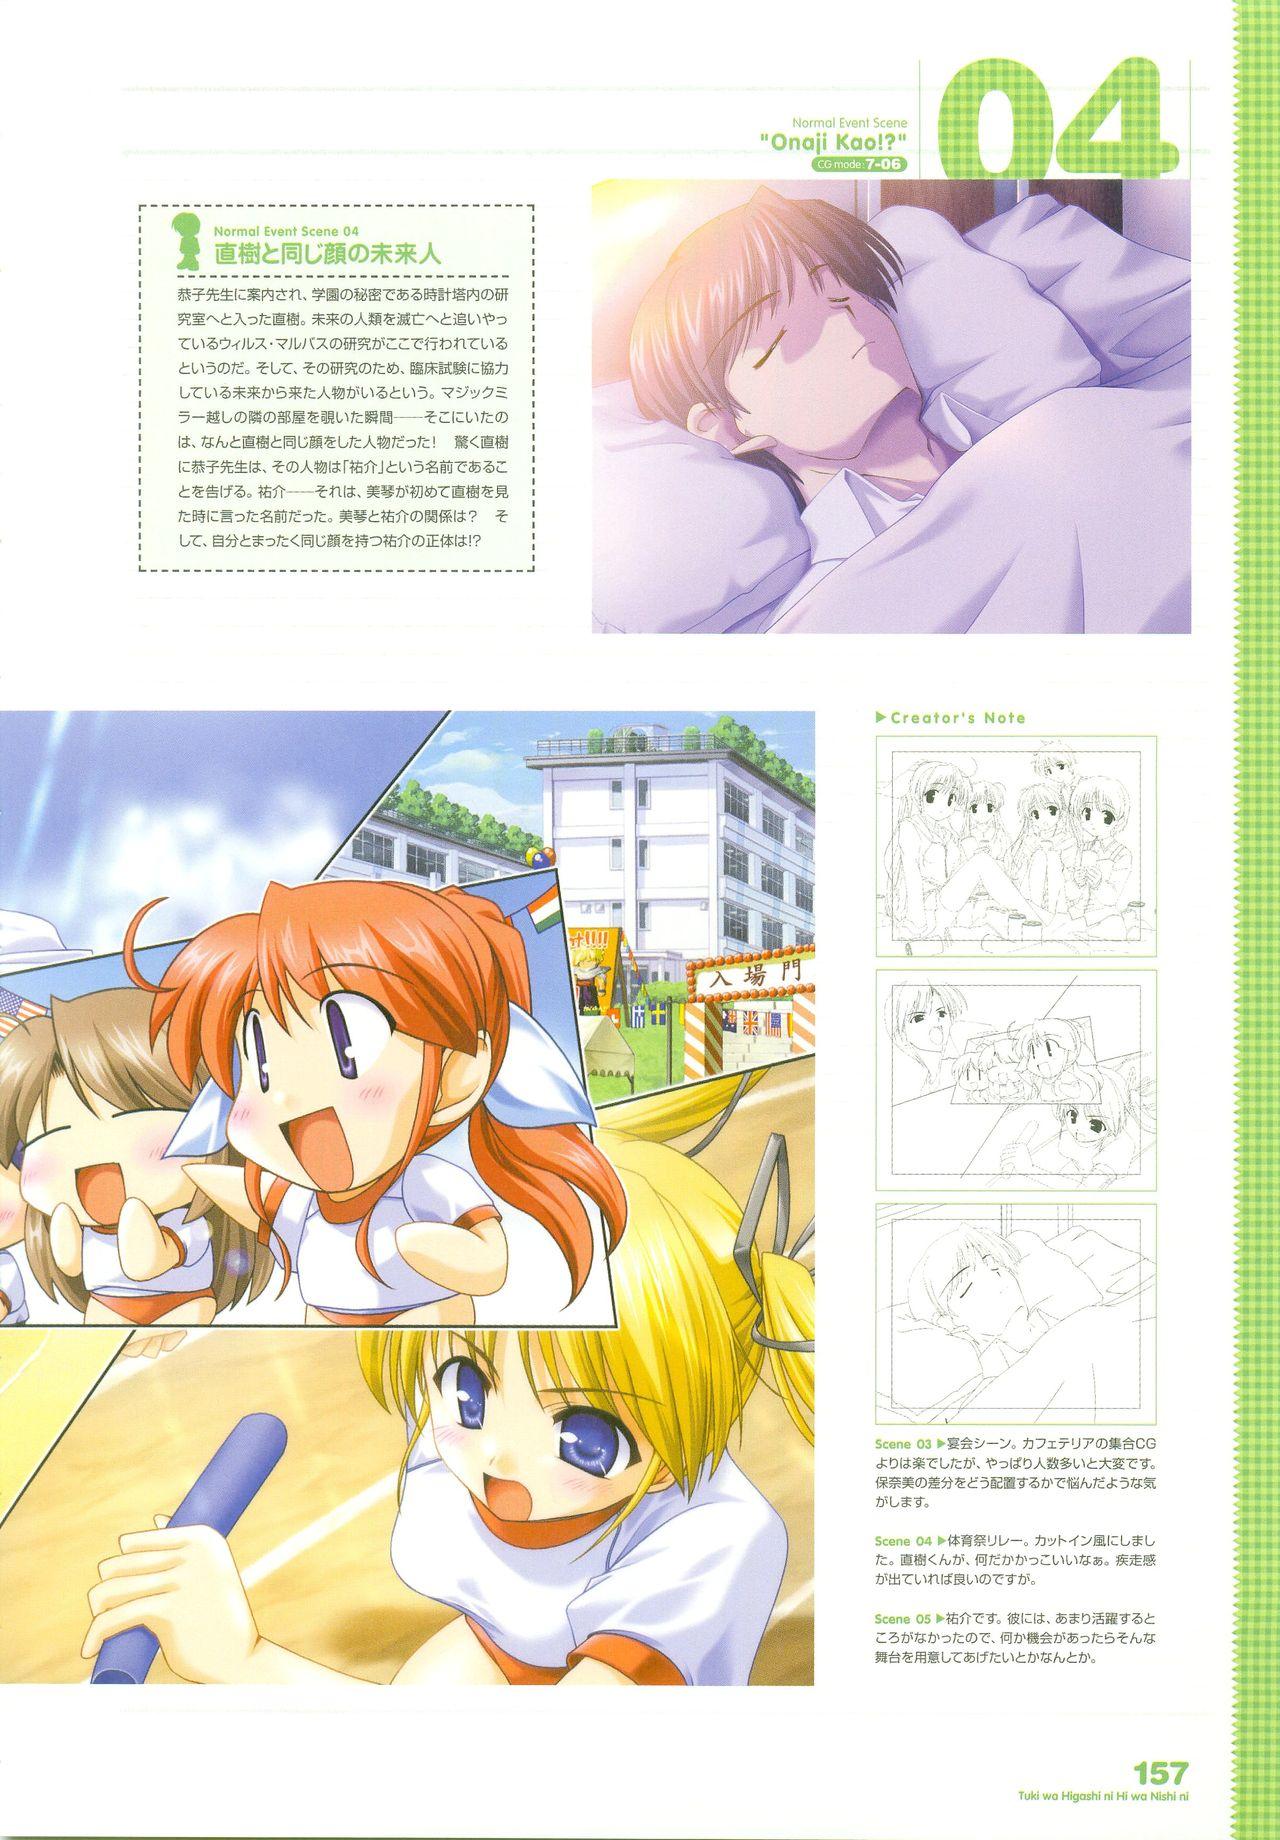 Tsuki wa Higashi ni Hi wa Nishi ni - Operation Sanctuary - Visual Fan Book Shokai Ban 193